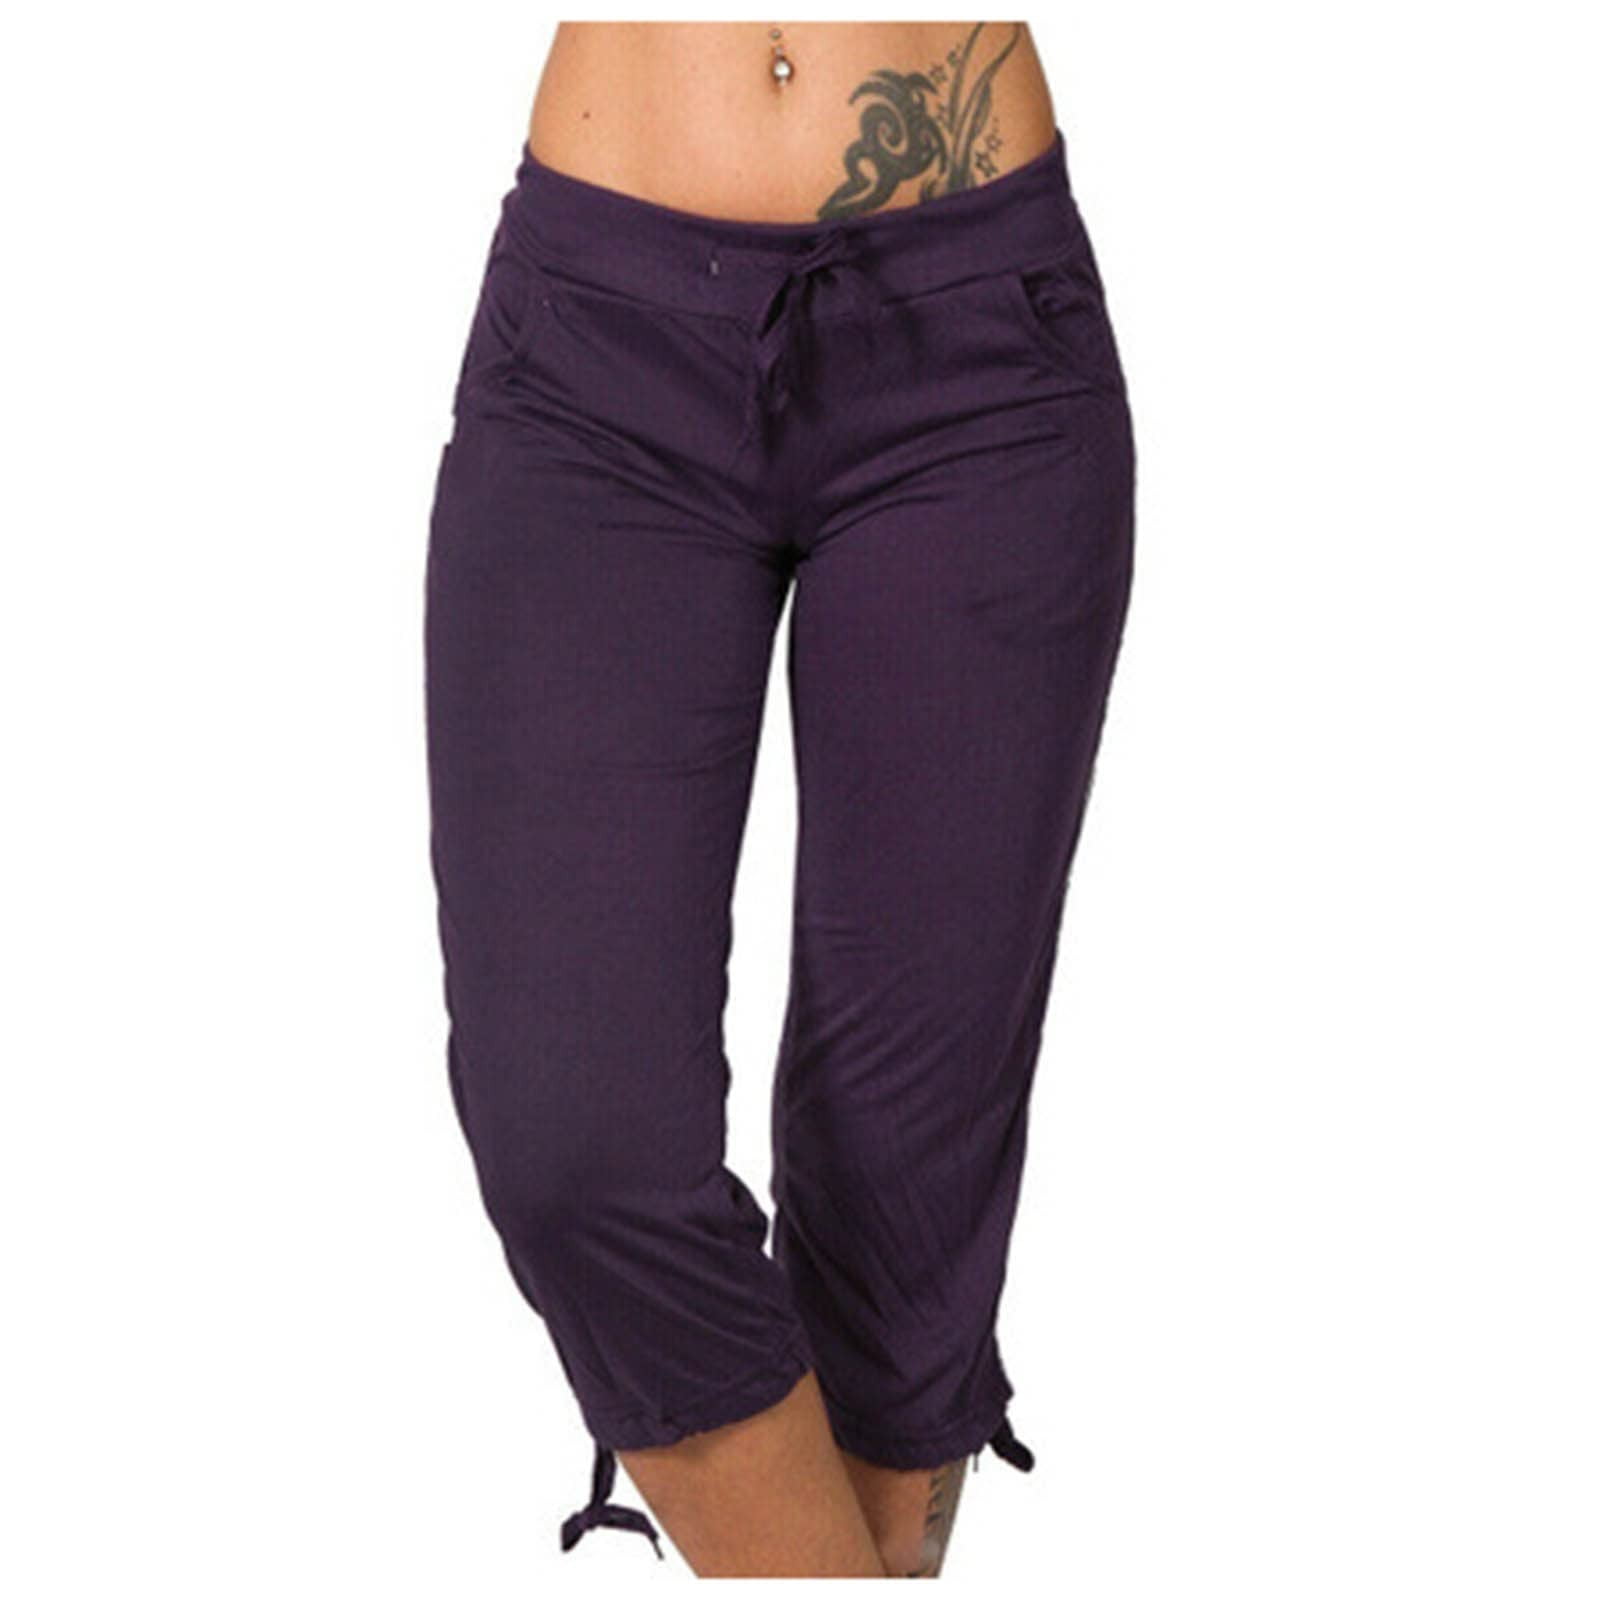 Sksloeg Women's Sweatpants Pockets Drawstring Running Sweatpants for Women  Lounge Tie Side Bottom Workout Jogging,Purple S